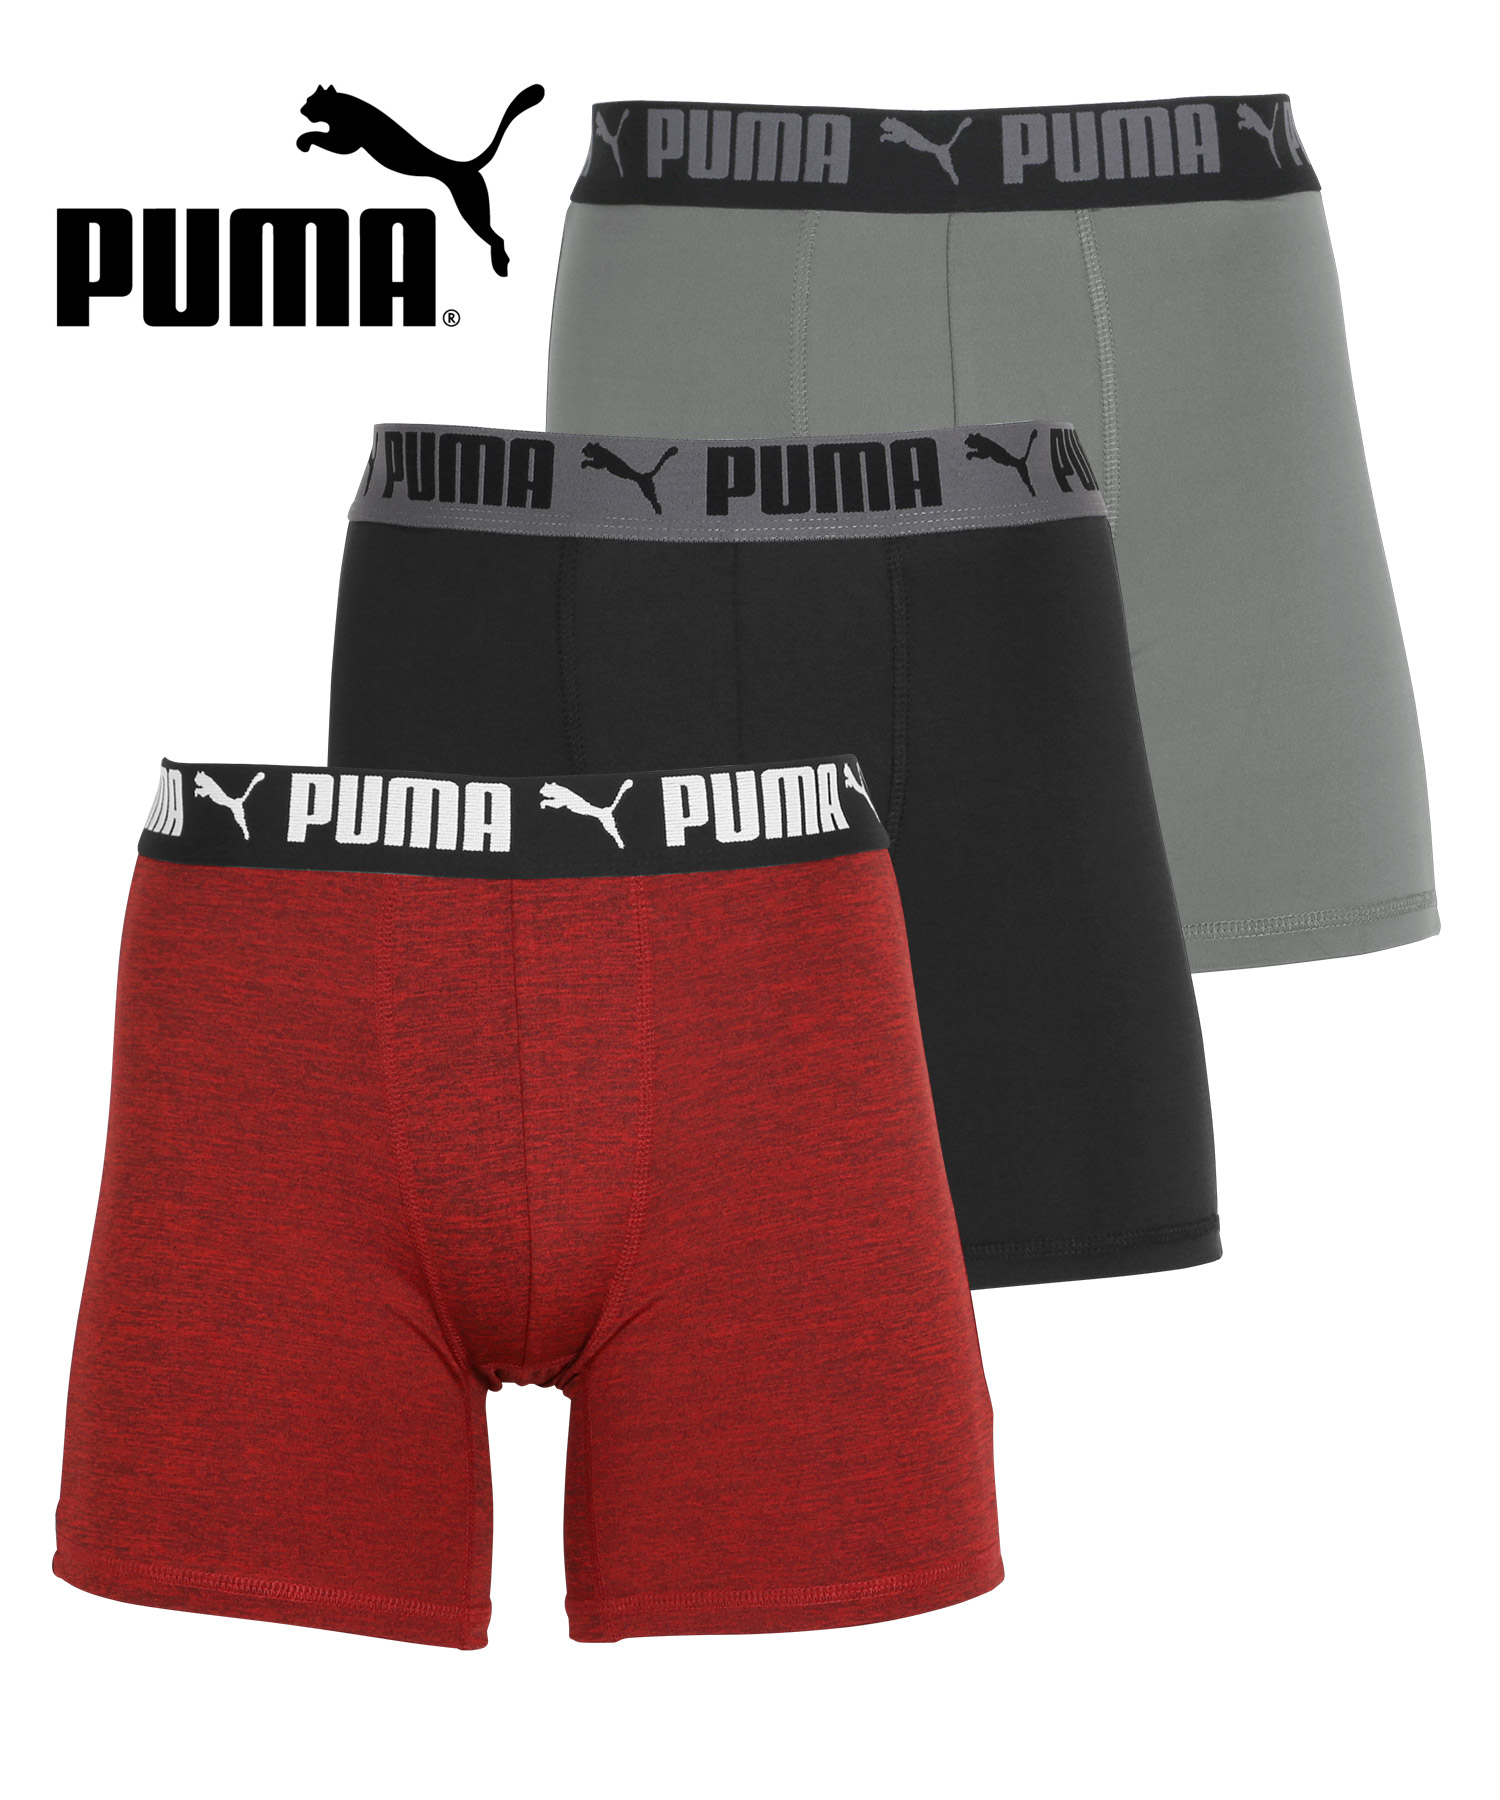 プーマ PUMA 3枚セット ボクサーパンツ メンズ ツルツル 速乾 トレーニング ジム 迷彩 ブラ...